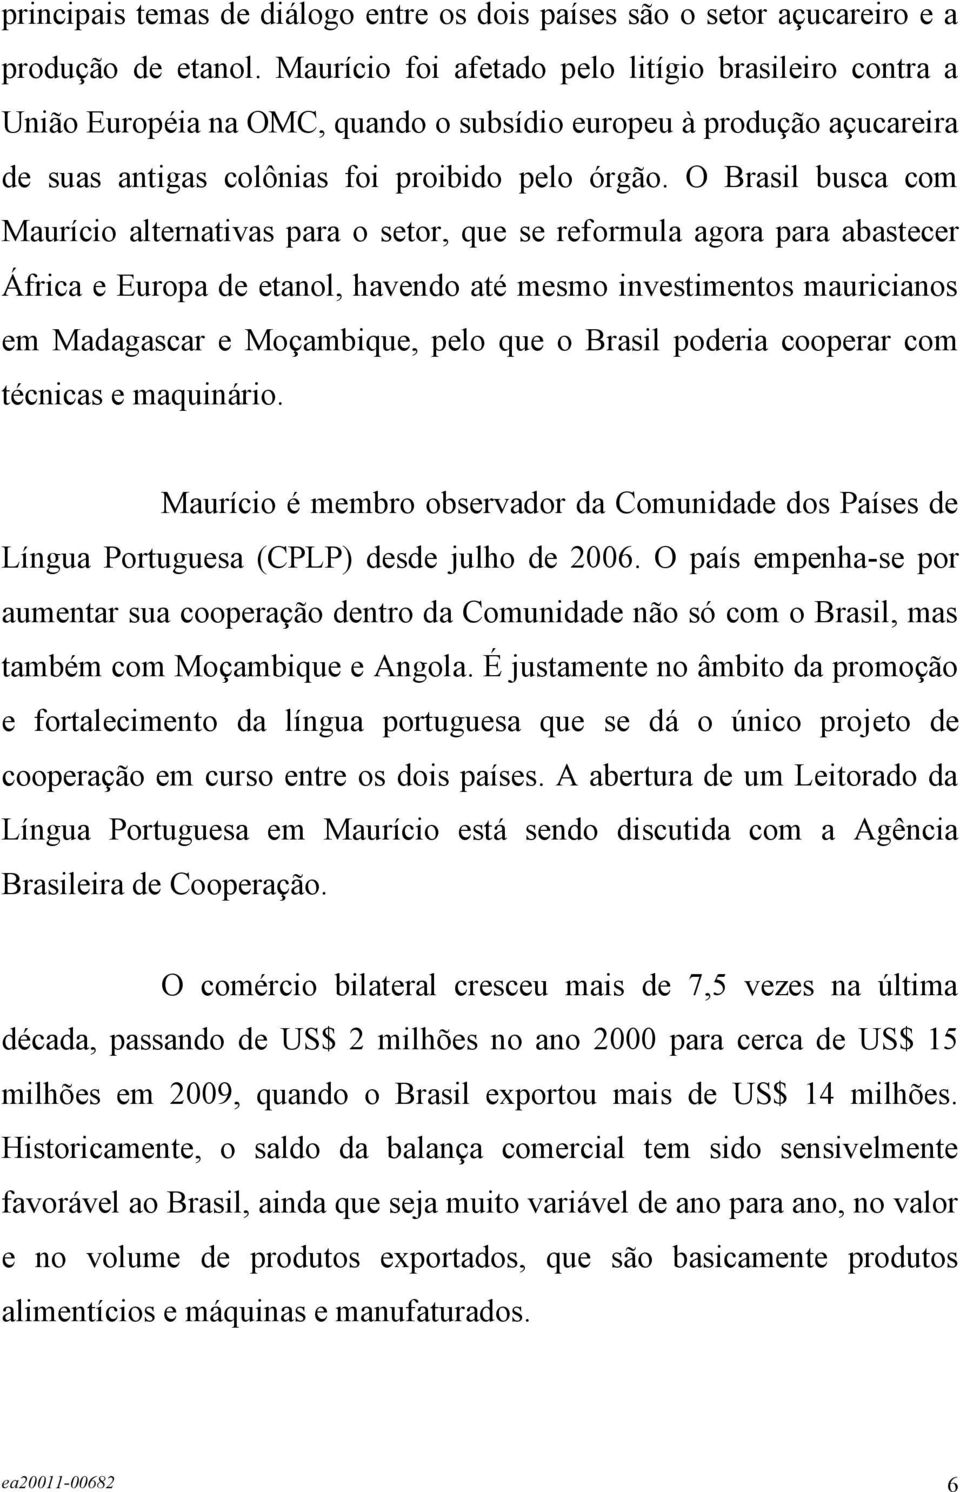 O Brasil busca com Maurício alternativas para o setor, que se reformula agora para abastecer África e Europa de etanol, havendo até mesmo investimentos mauricianos em Madagascar e Moçambique, pelo